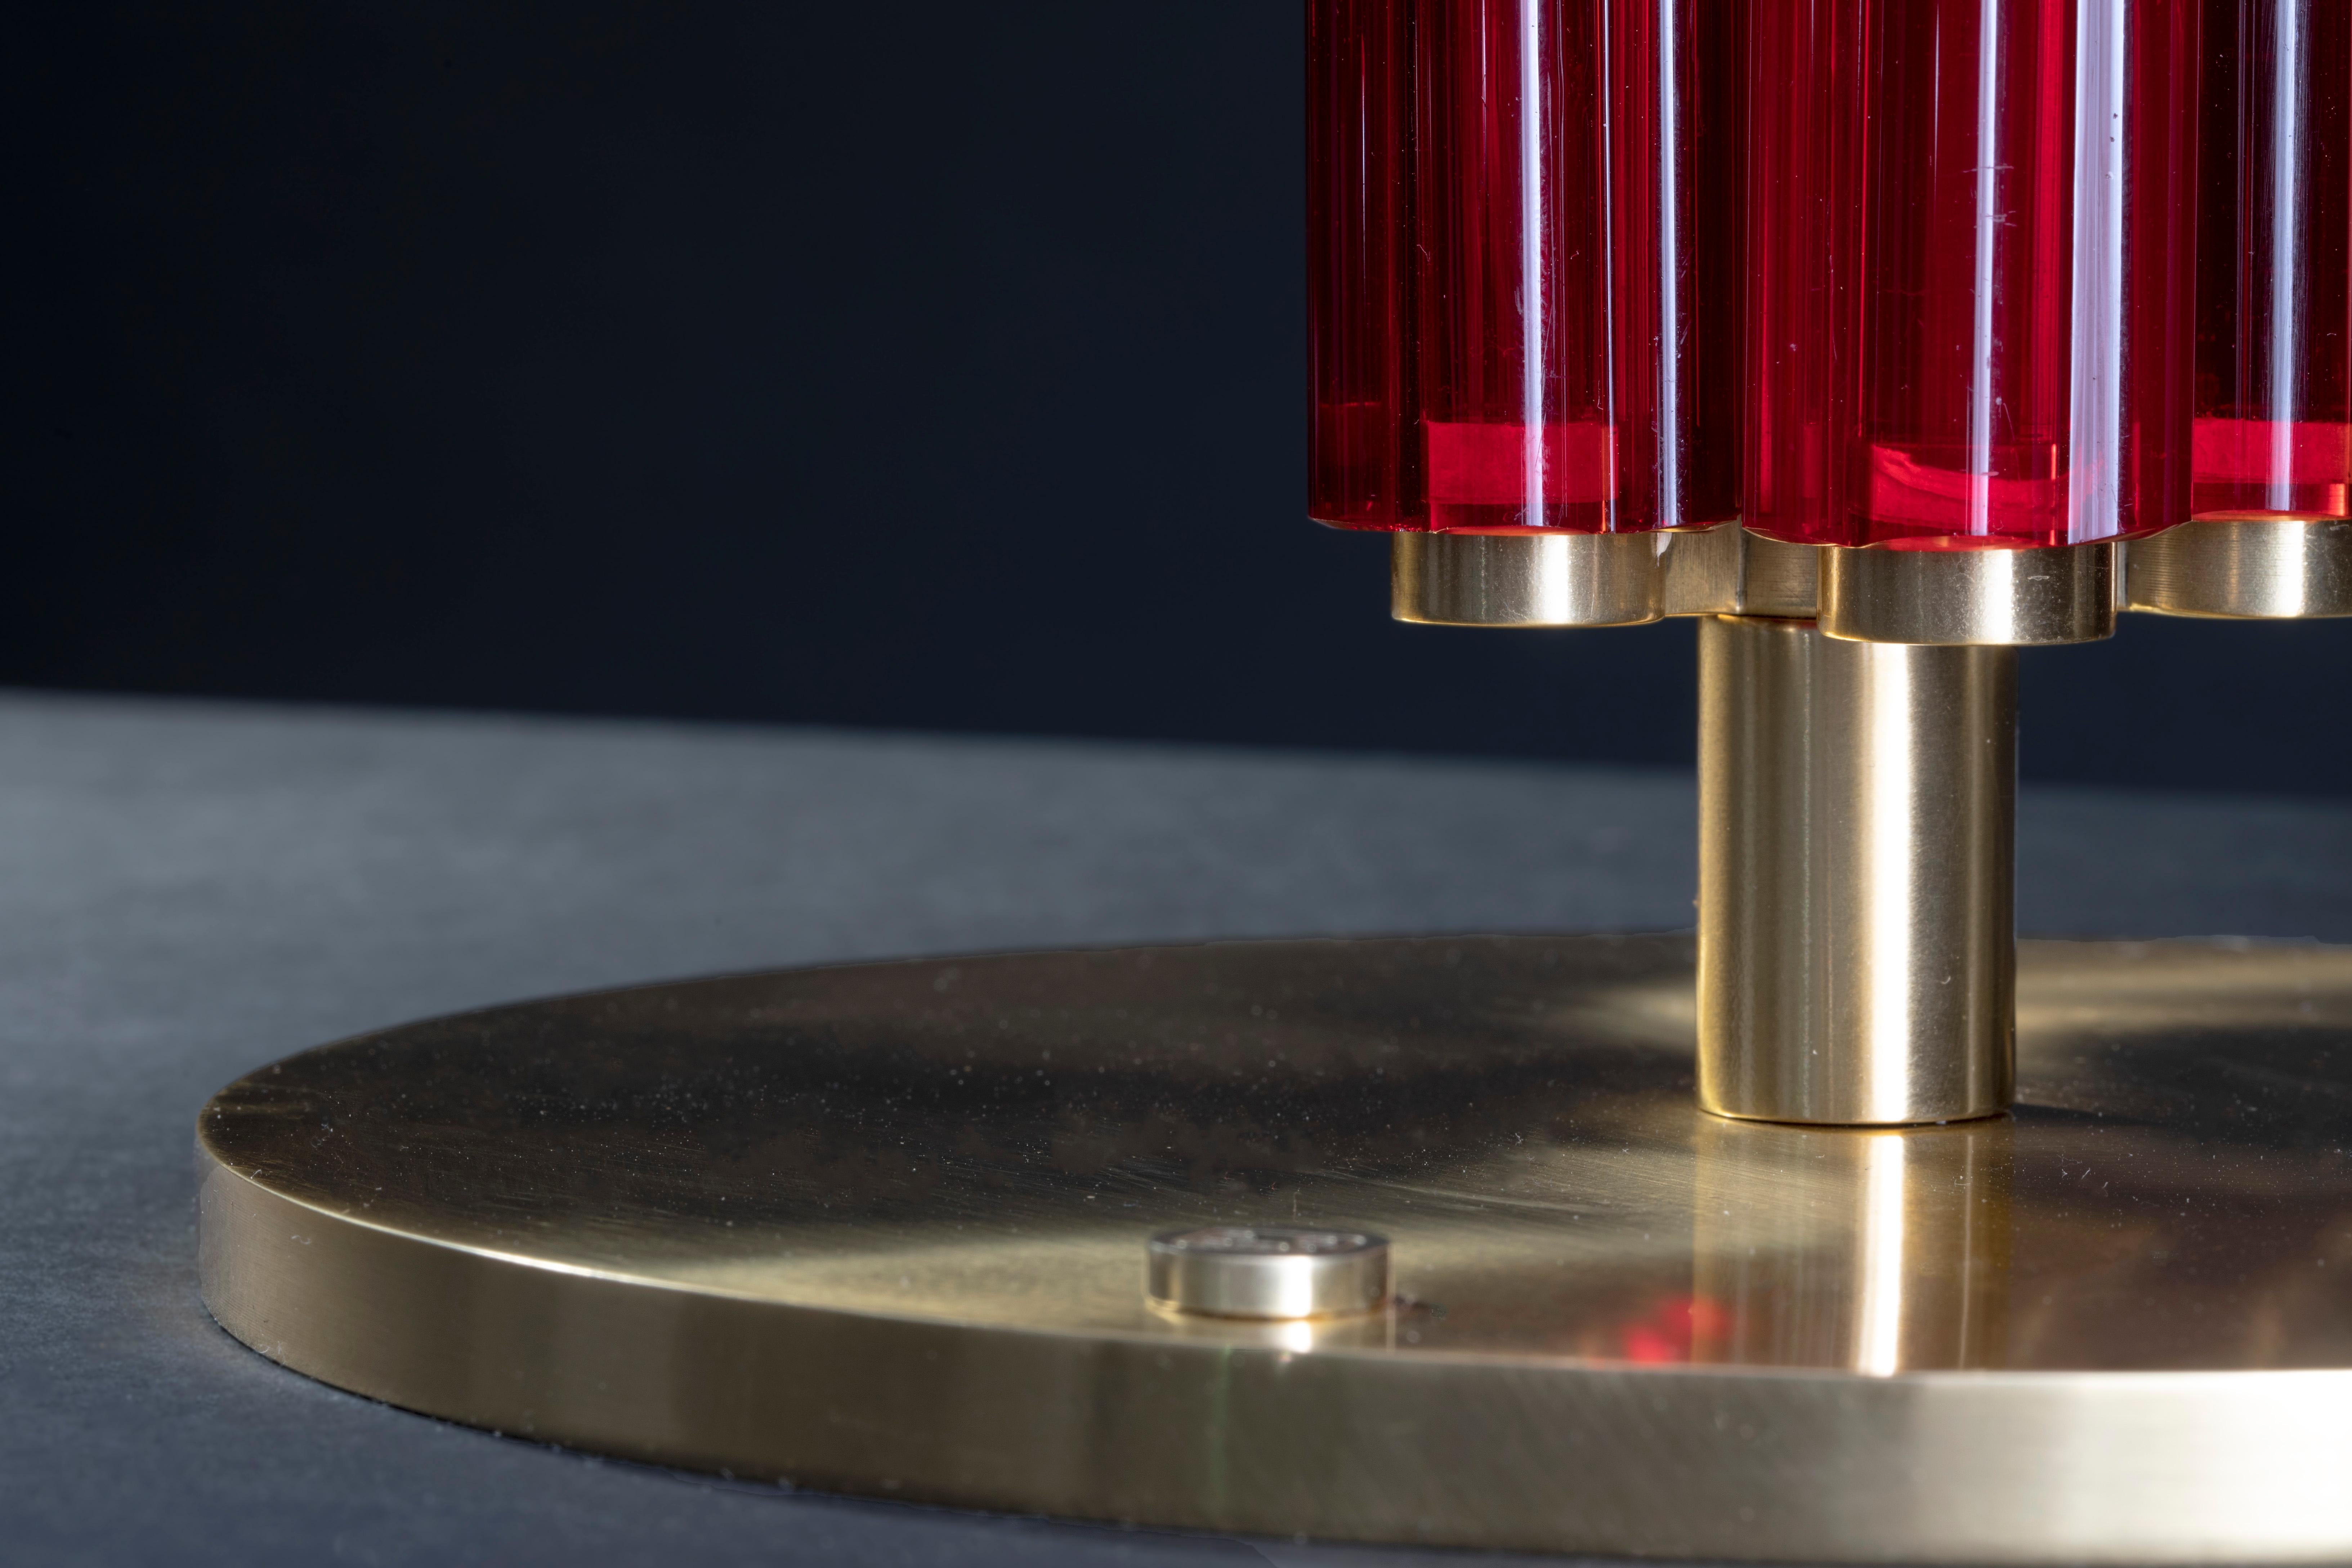 Lampe à poser 'RED CANE' simple

Lampe spécialement conçue et fabriquée sur du verre de Murano d'un rouge vif rare. Les objets en verre de Murano ont été soufflés et moulés à la main en forme de cannes creuses de section 